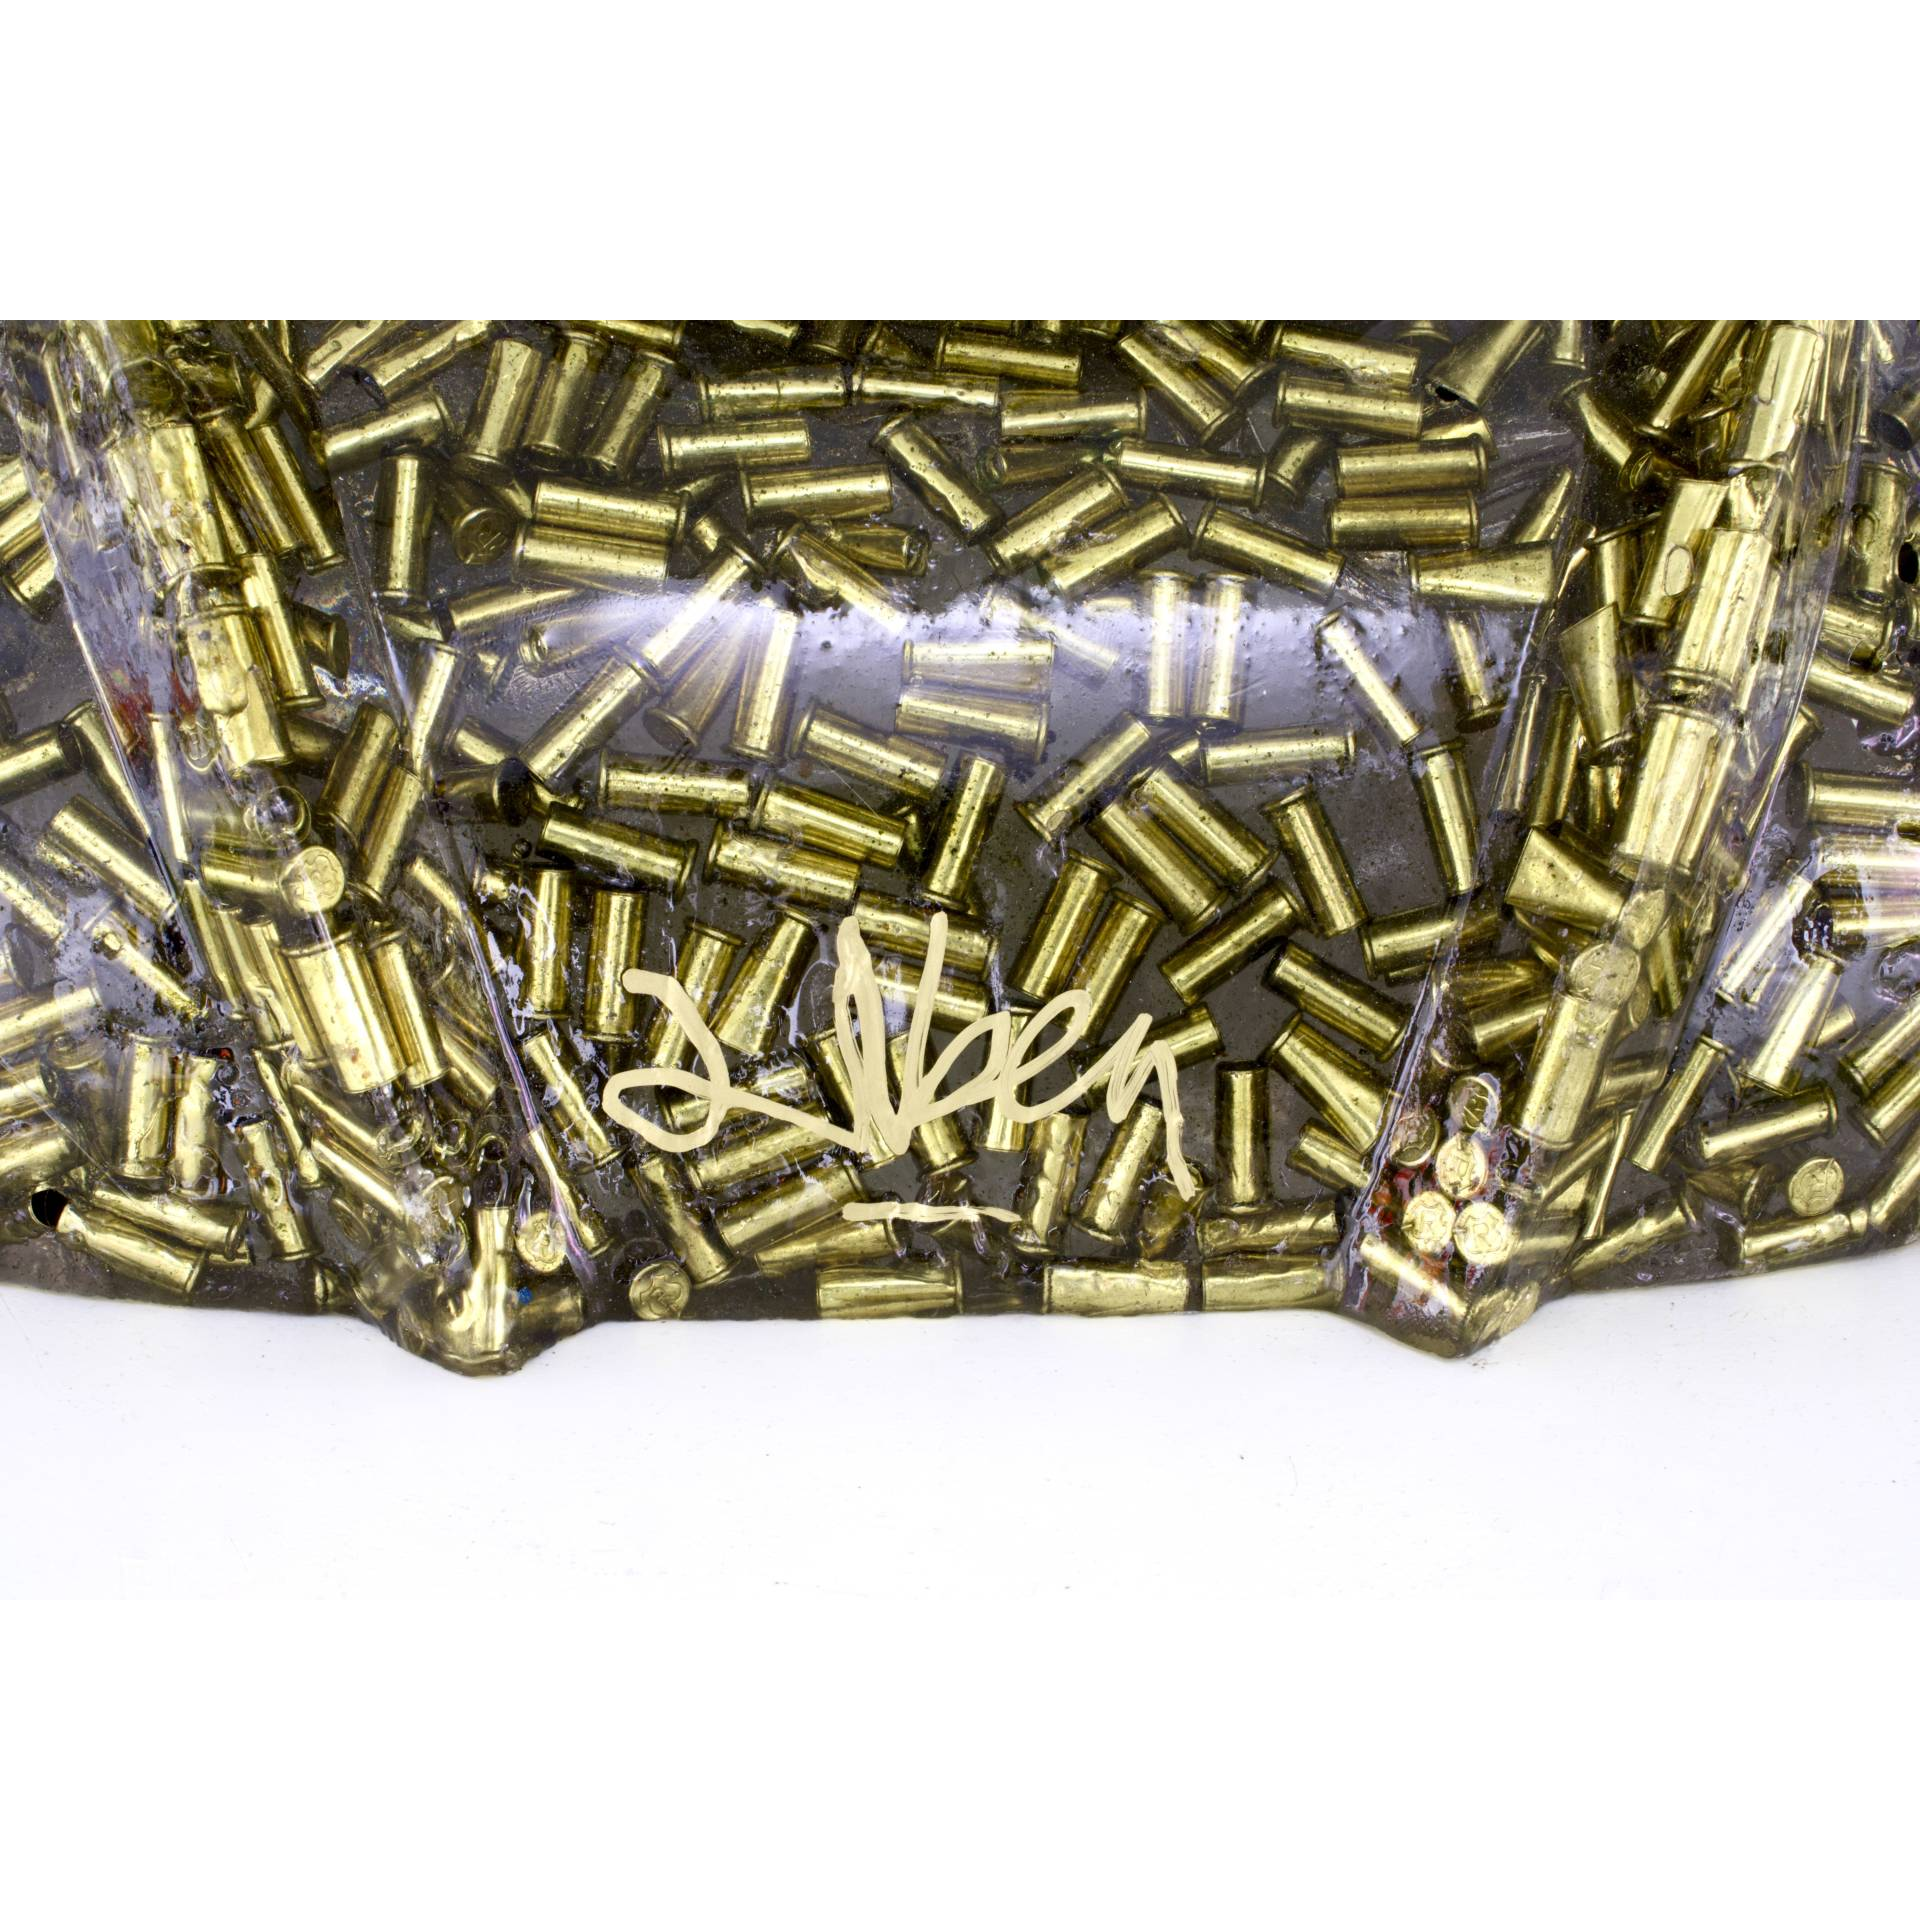 ALBEN, Goldorak Bullets, Douilles Et Resine, 33 X 50 X 28 Cm